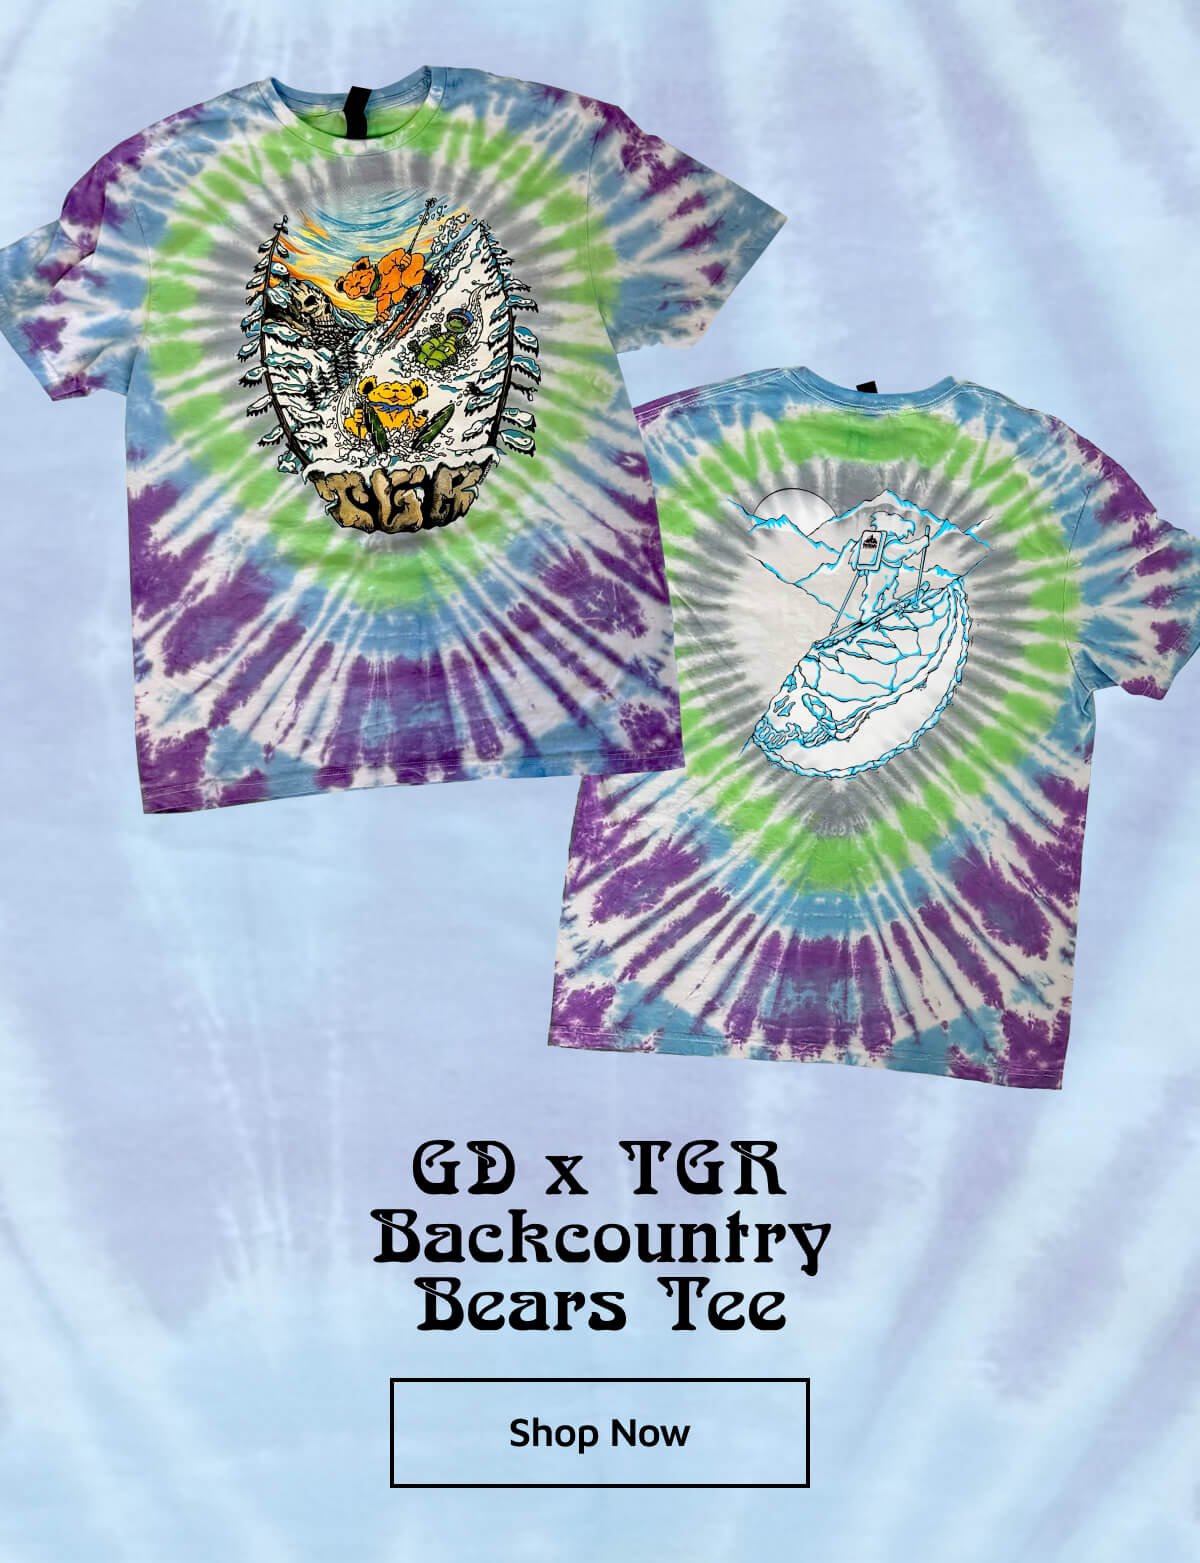 GD x TGR Backcountry Bears Tee